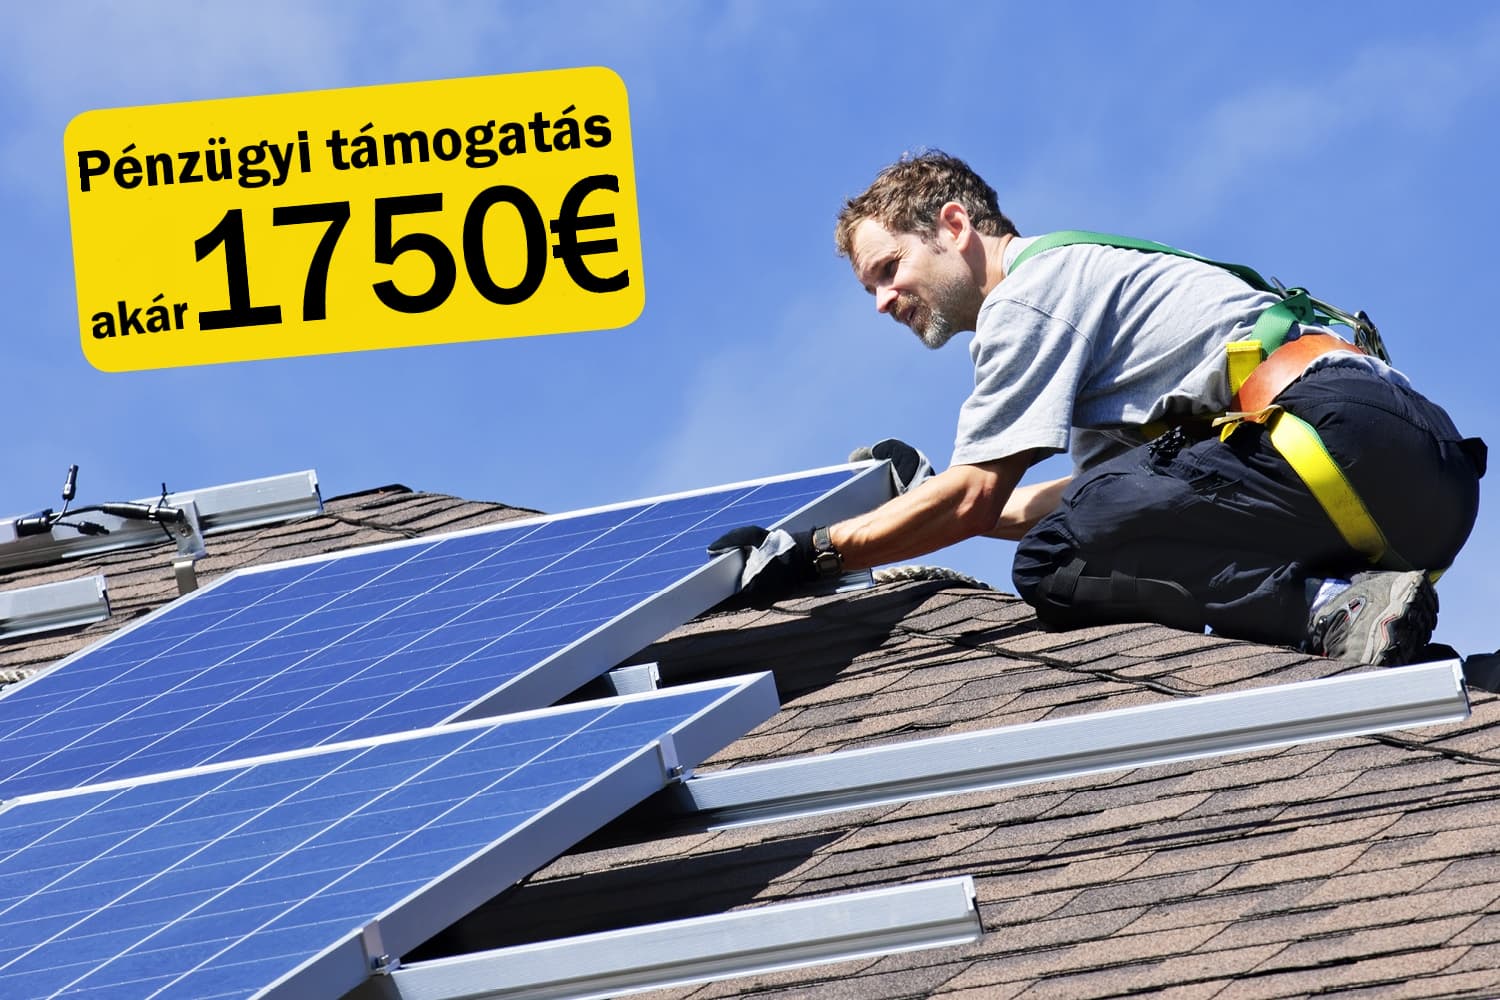 Akár 1750 € értékű támogatáshoz is juthat, aki napkollektorok telepítését fontolgatja